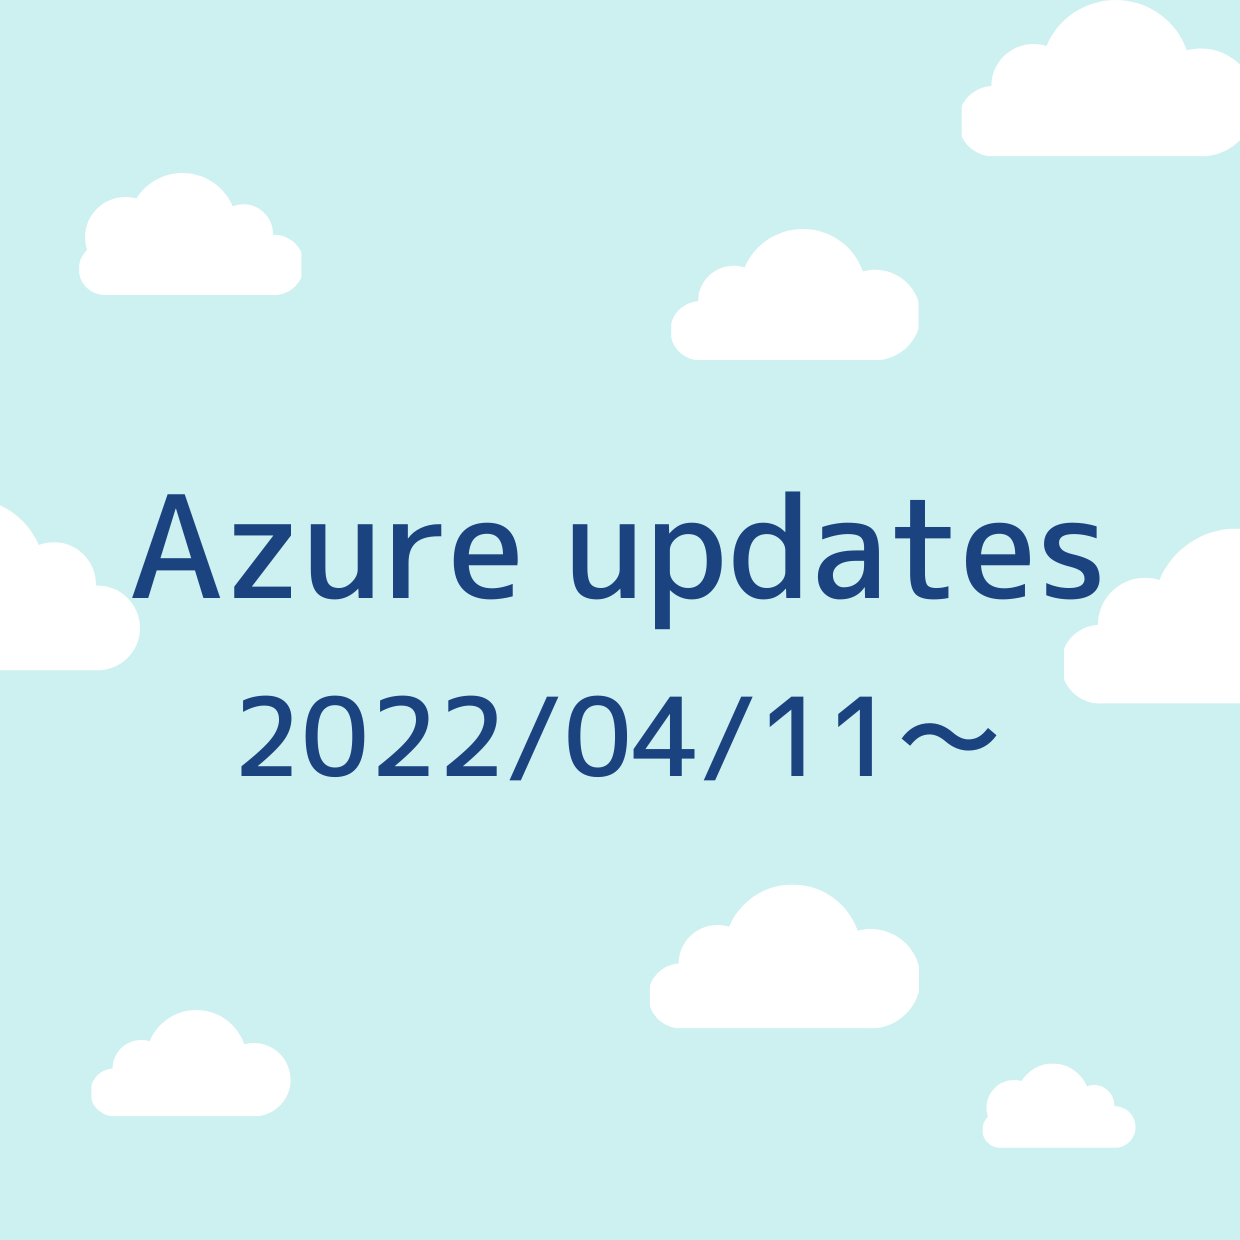 2022/04/11 週の Azure updates 日本語速報